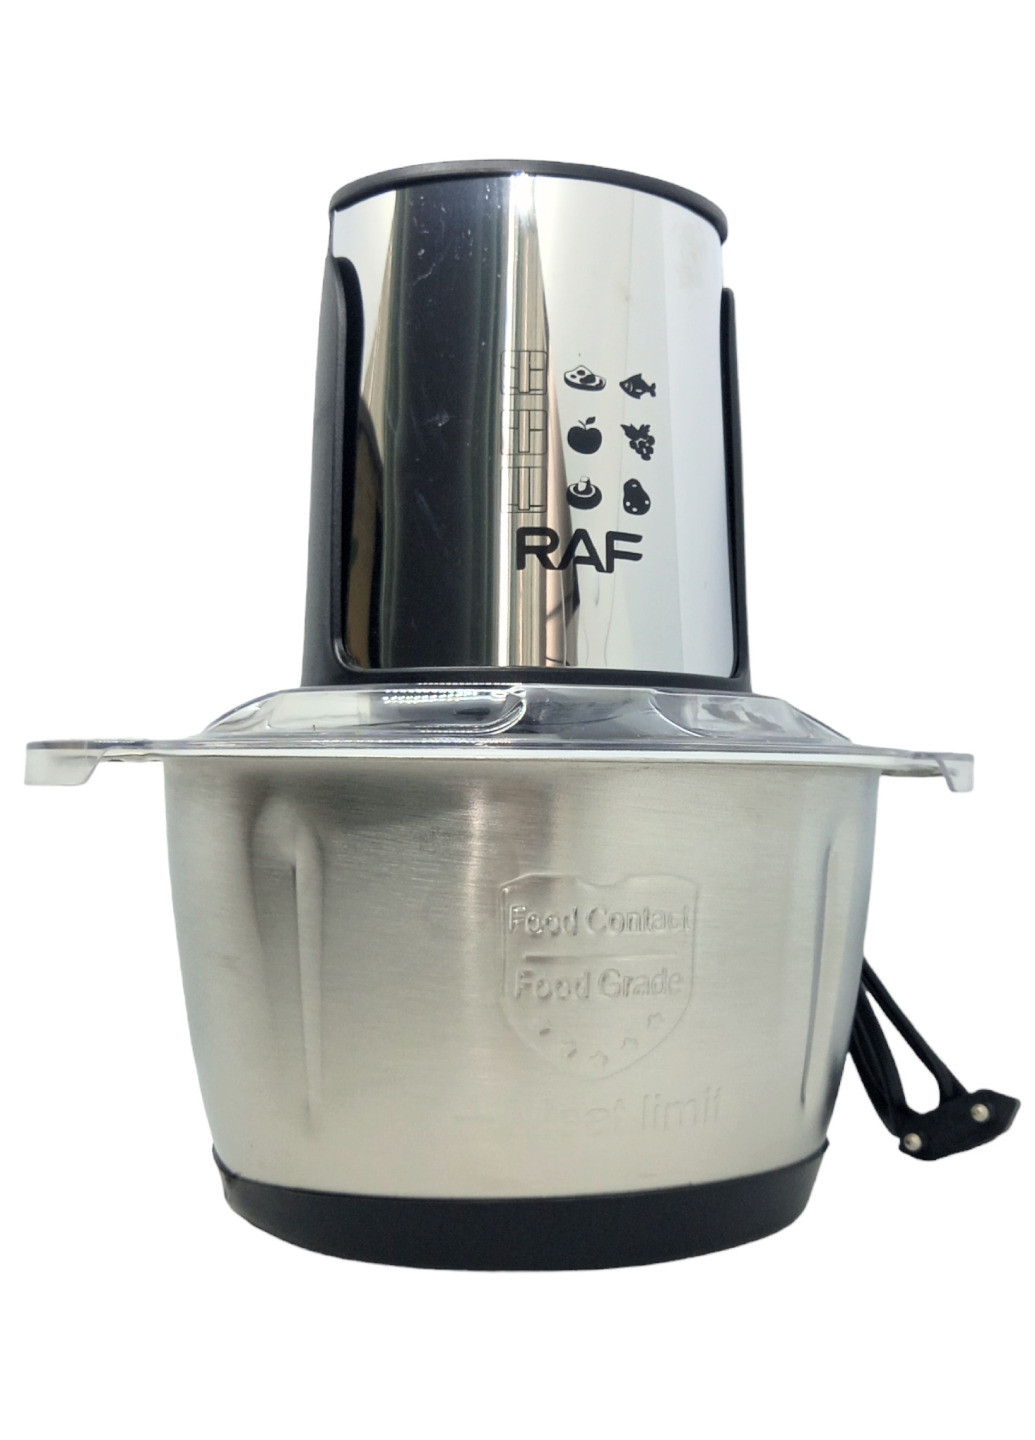 Комбайн кухонный блендер с металлической чашей измельчитель мясорубка с двухъярусным лезвием электрический RAF (266144805)